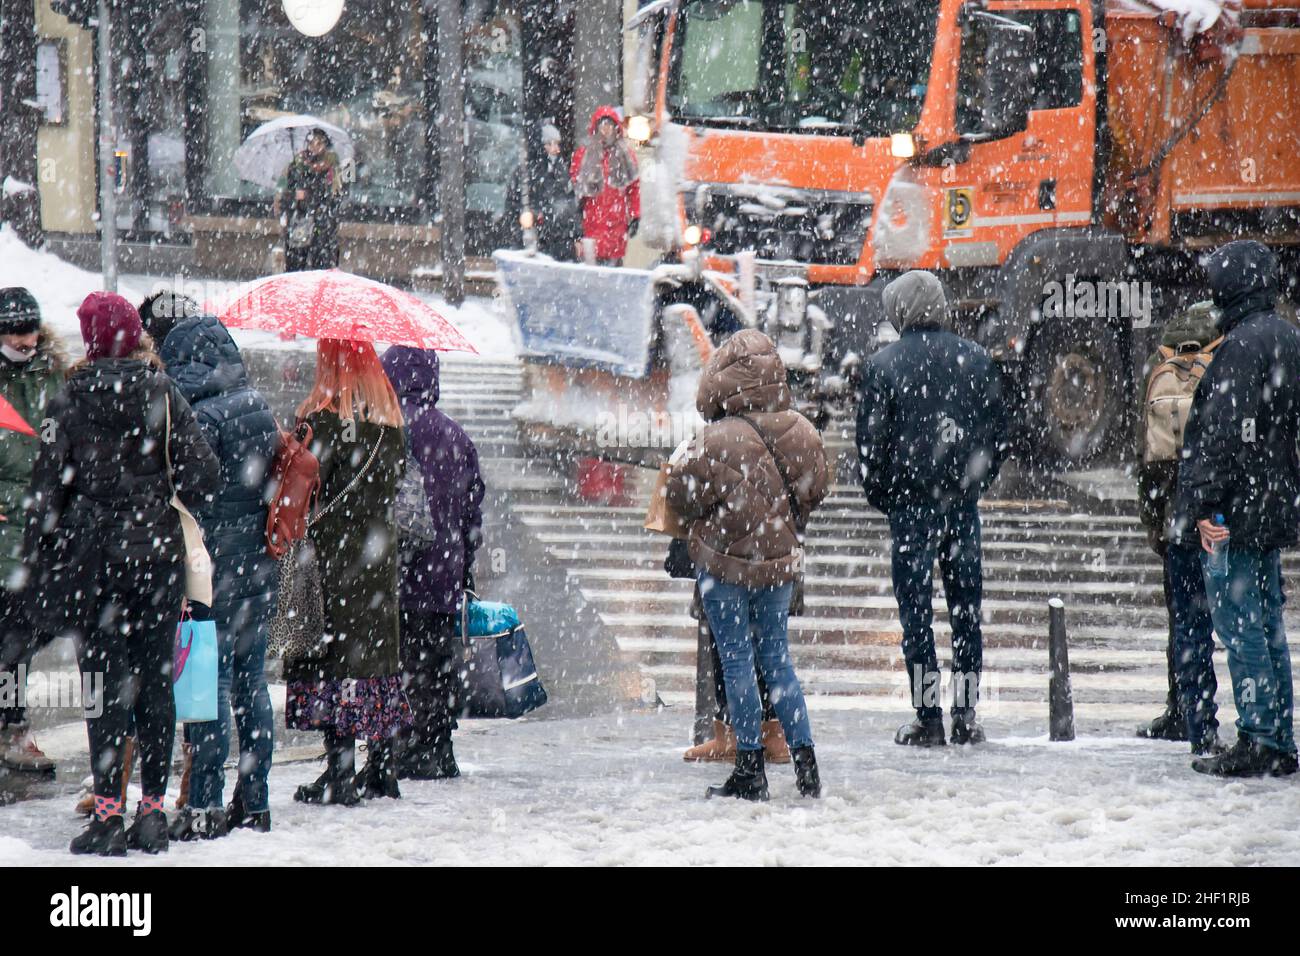 Belgrado, Serbia - 11 de enero de 2022: Personas esperando en el cruce de carreteras en una calle nevada de la ciudad durante una fuerte caída de nieve, y un camión de remoción de nieve está conduciendo pa Foto de stock